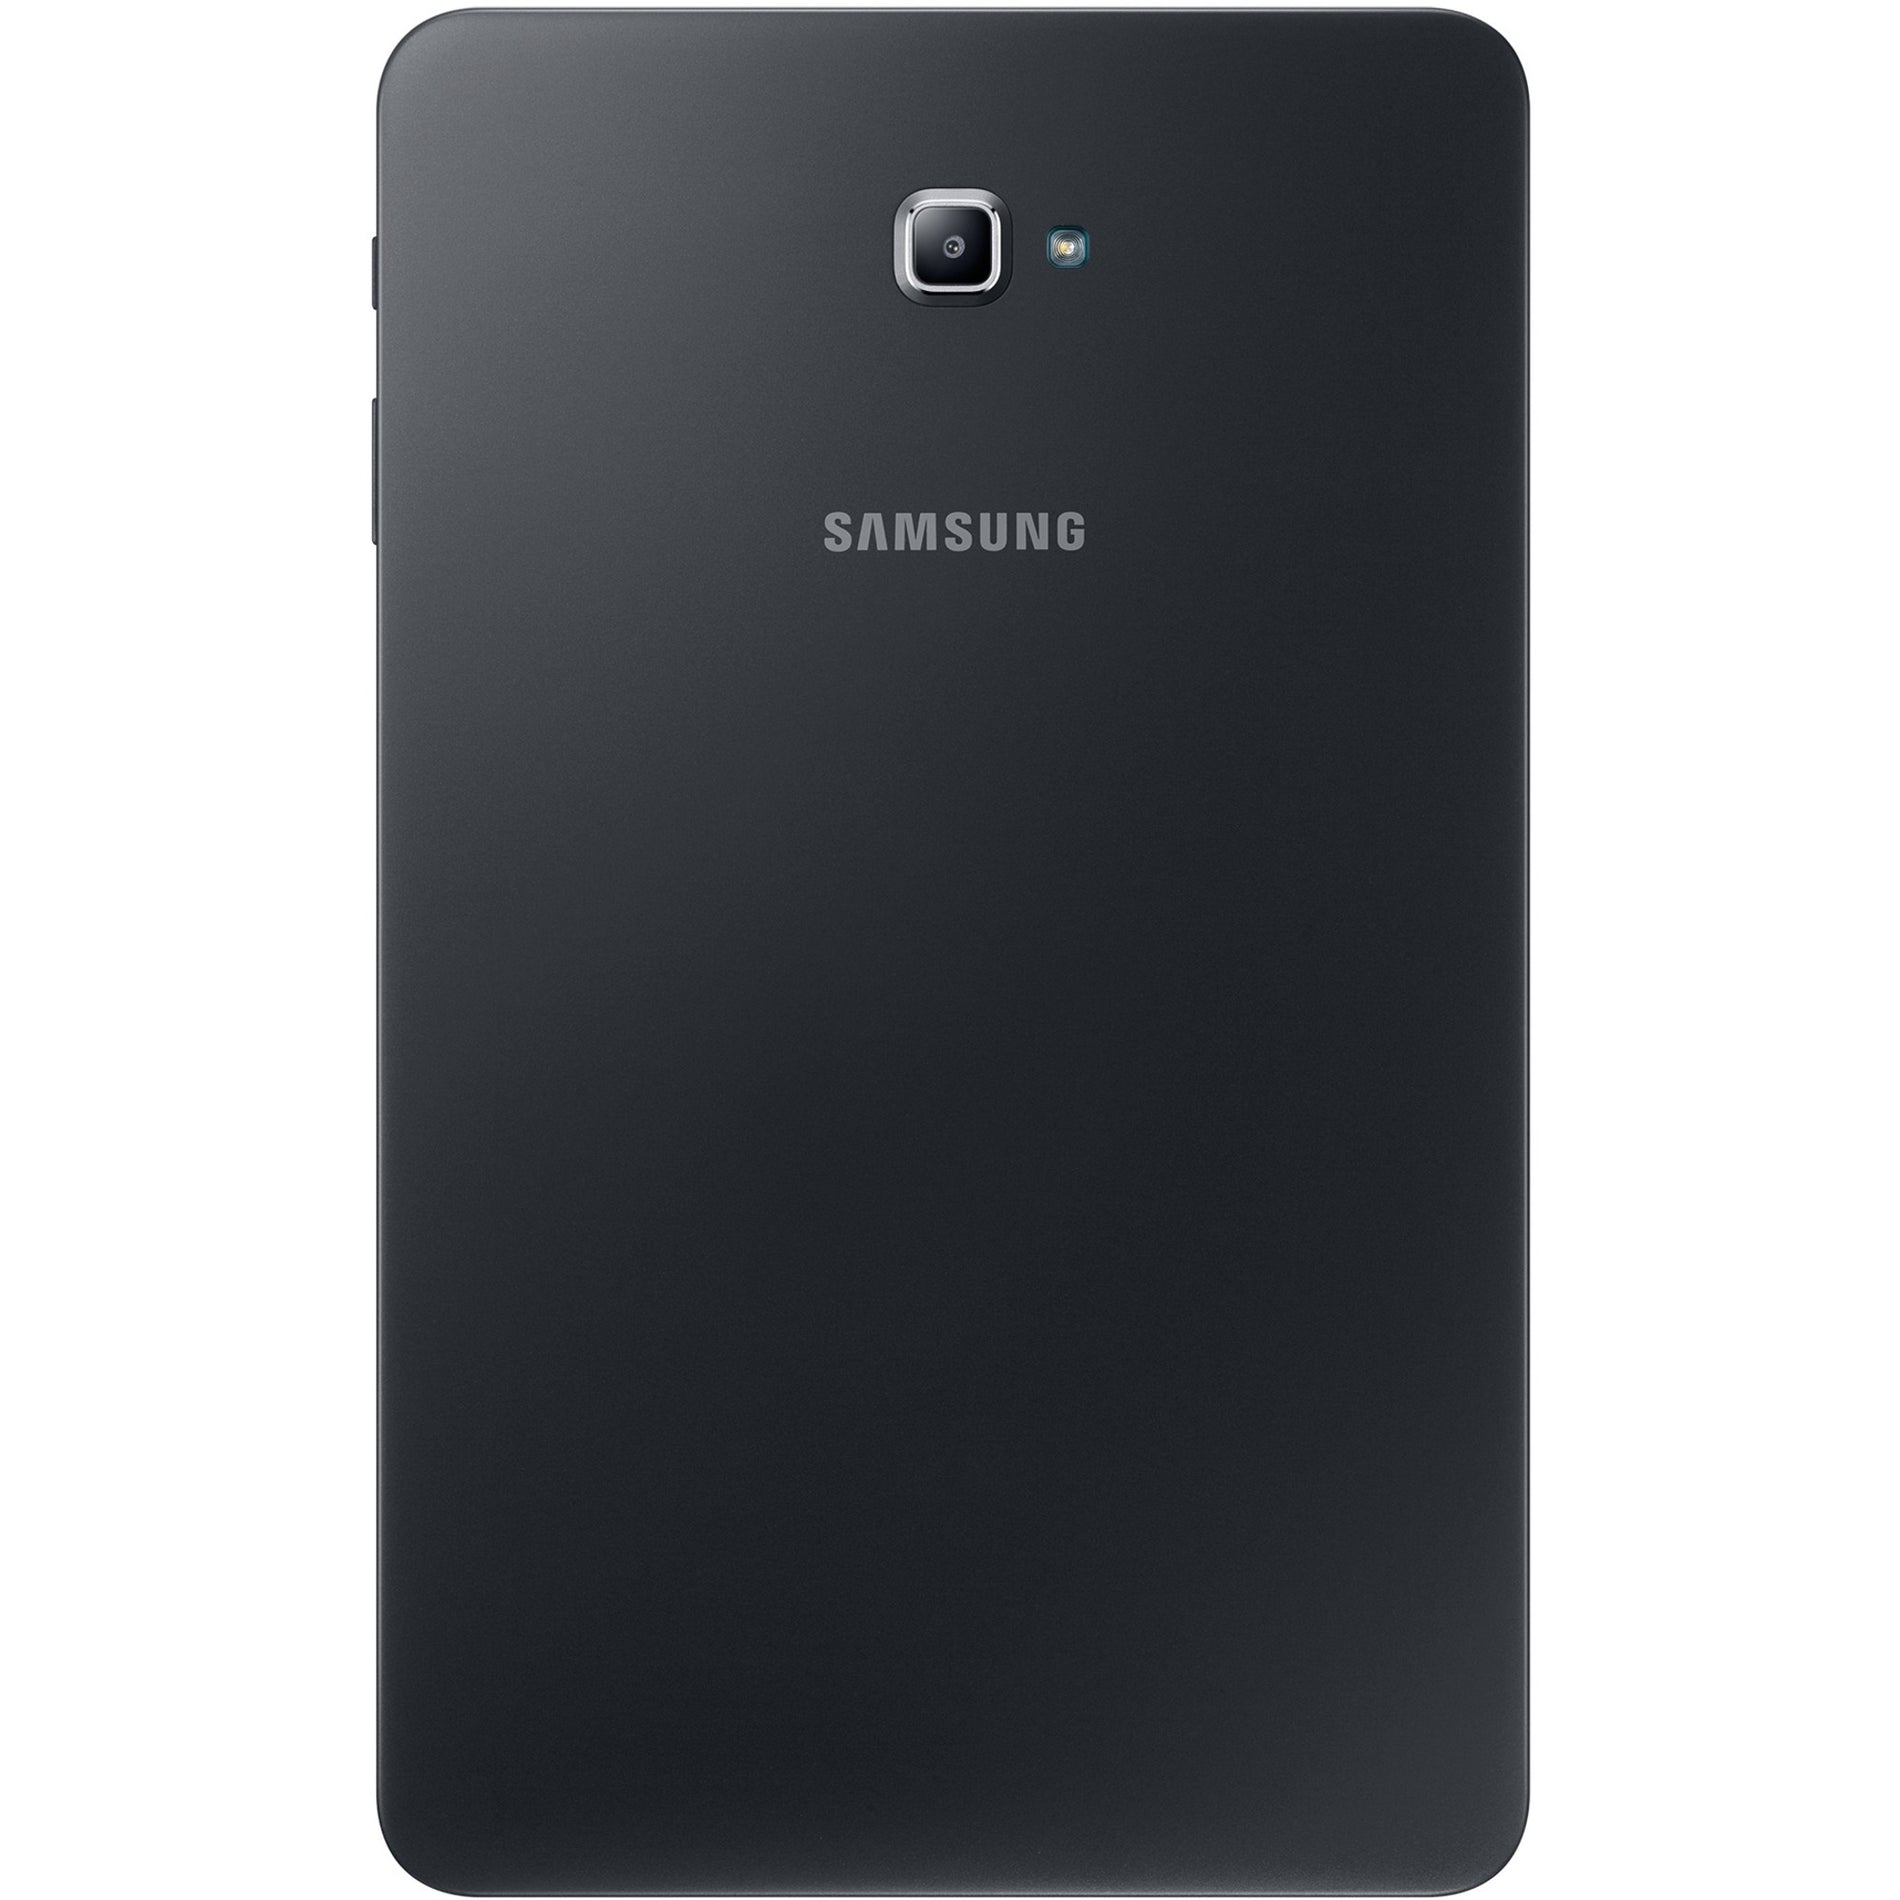 Samsung GALAXY TAB A 10.1"/16GB/ANDROID (SM-T580NZKAXAR)